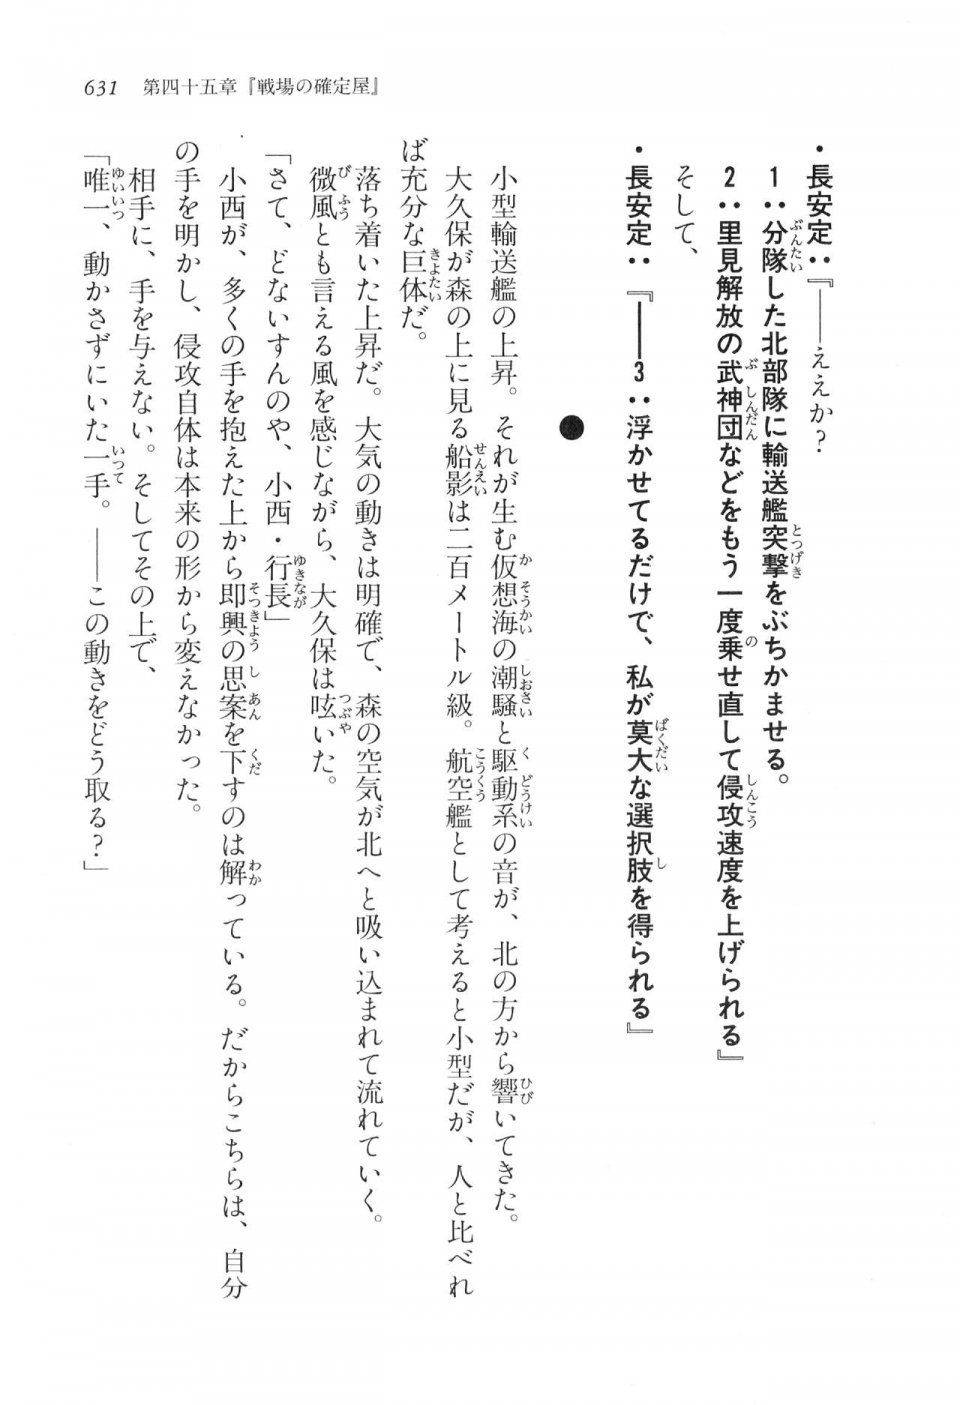 Kyoukai Senjou no Horizon LN Vol 17(7B) - Photo #633